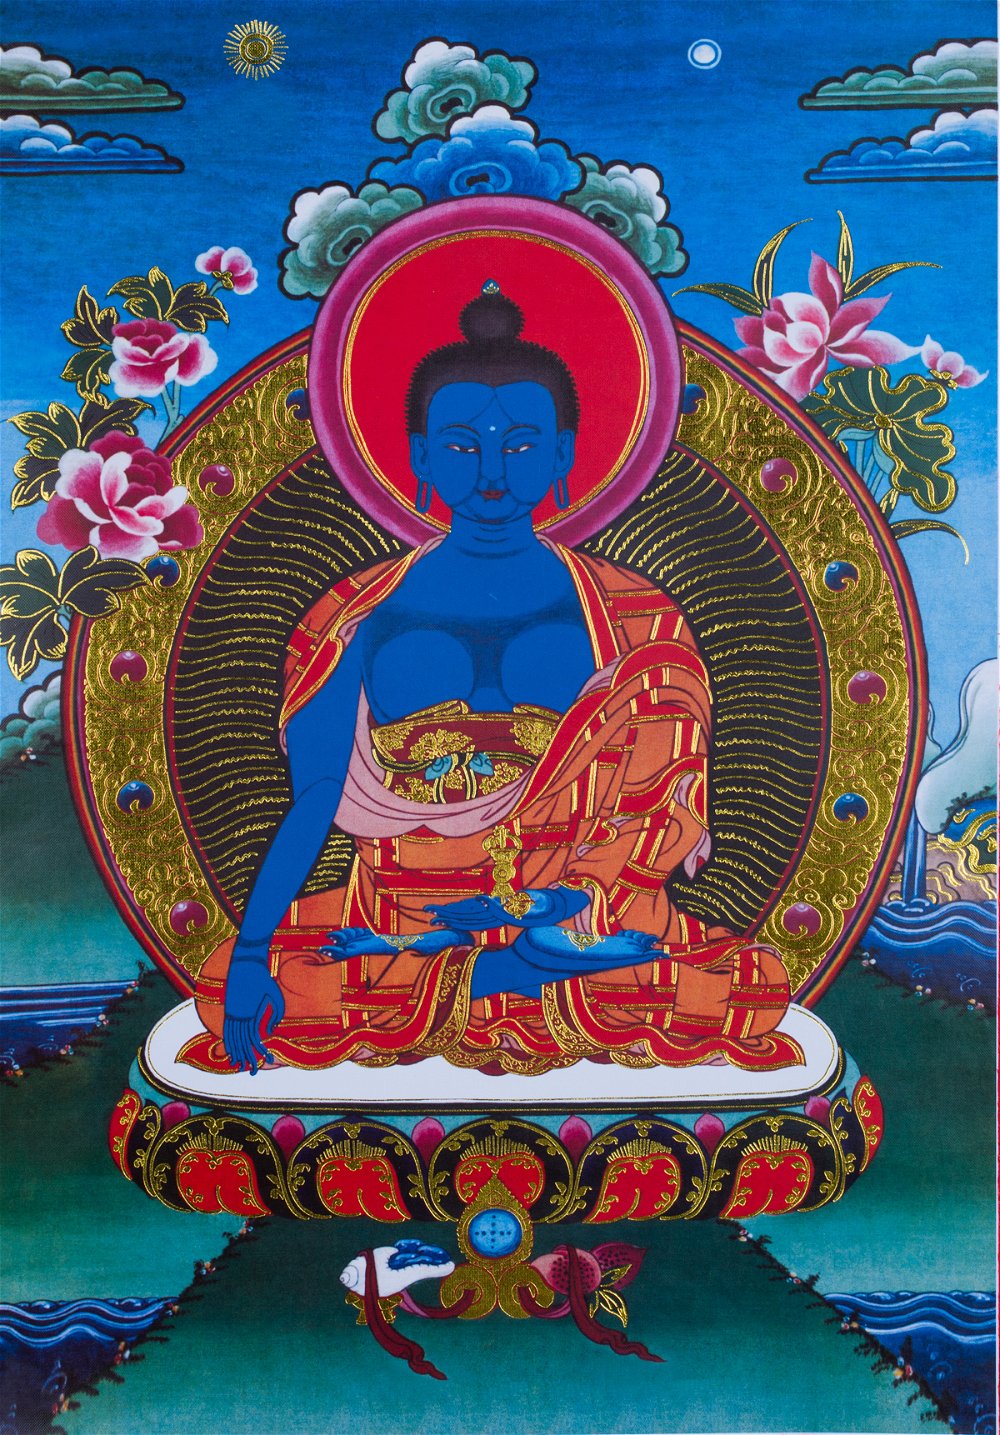 Тханка Будда Акшобхья (печатная, 51 х 83 см), 51 х 83 см, изображение: 32 х 45 см